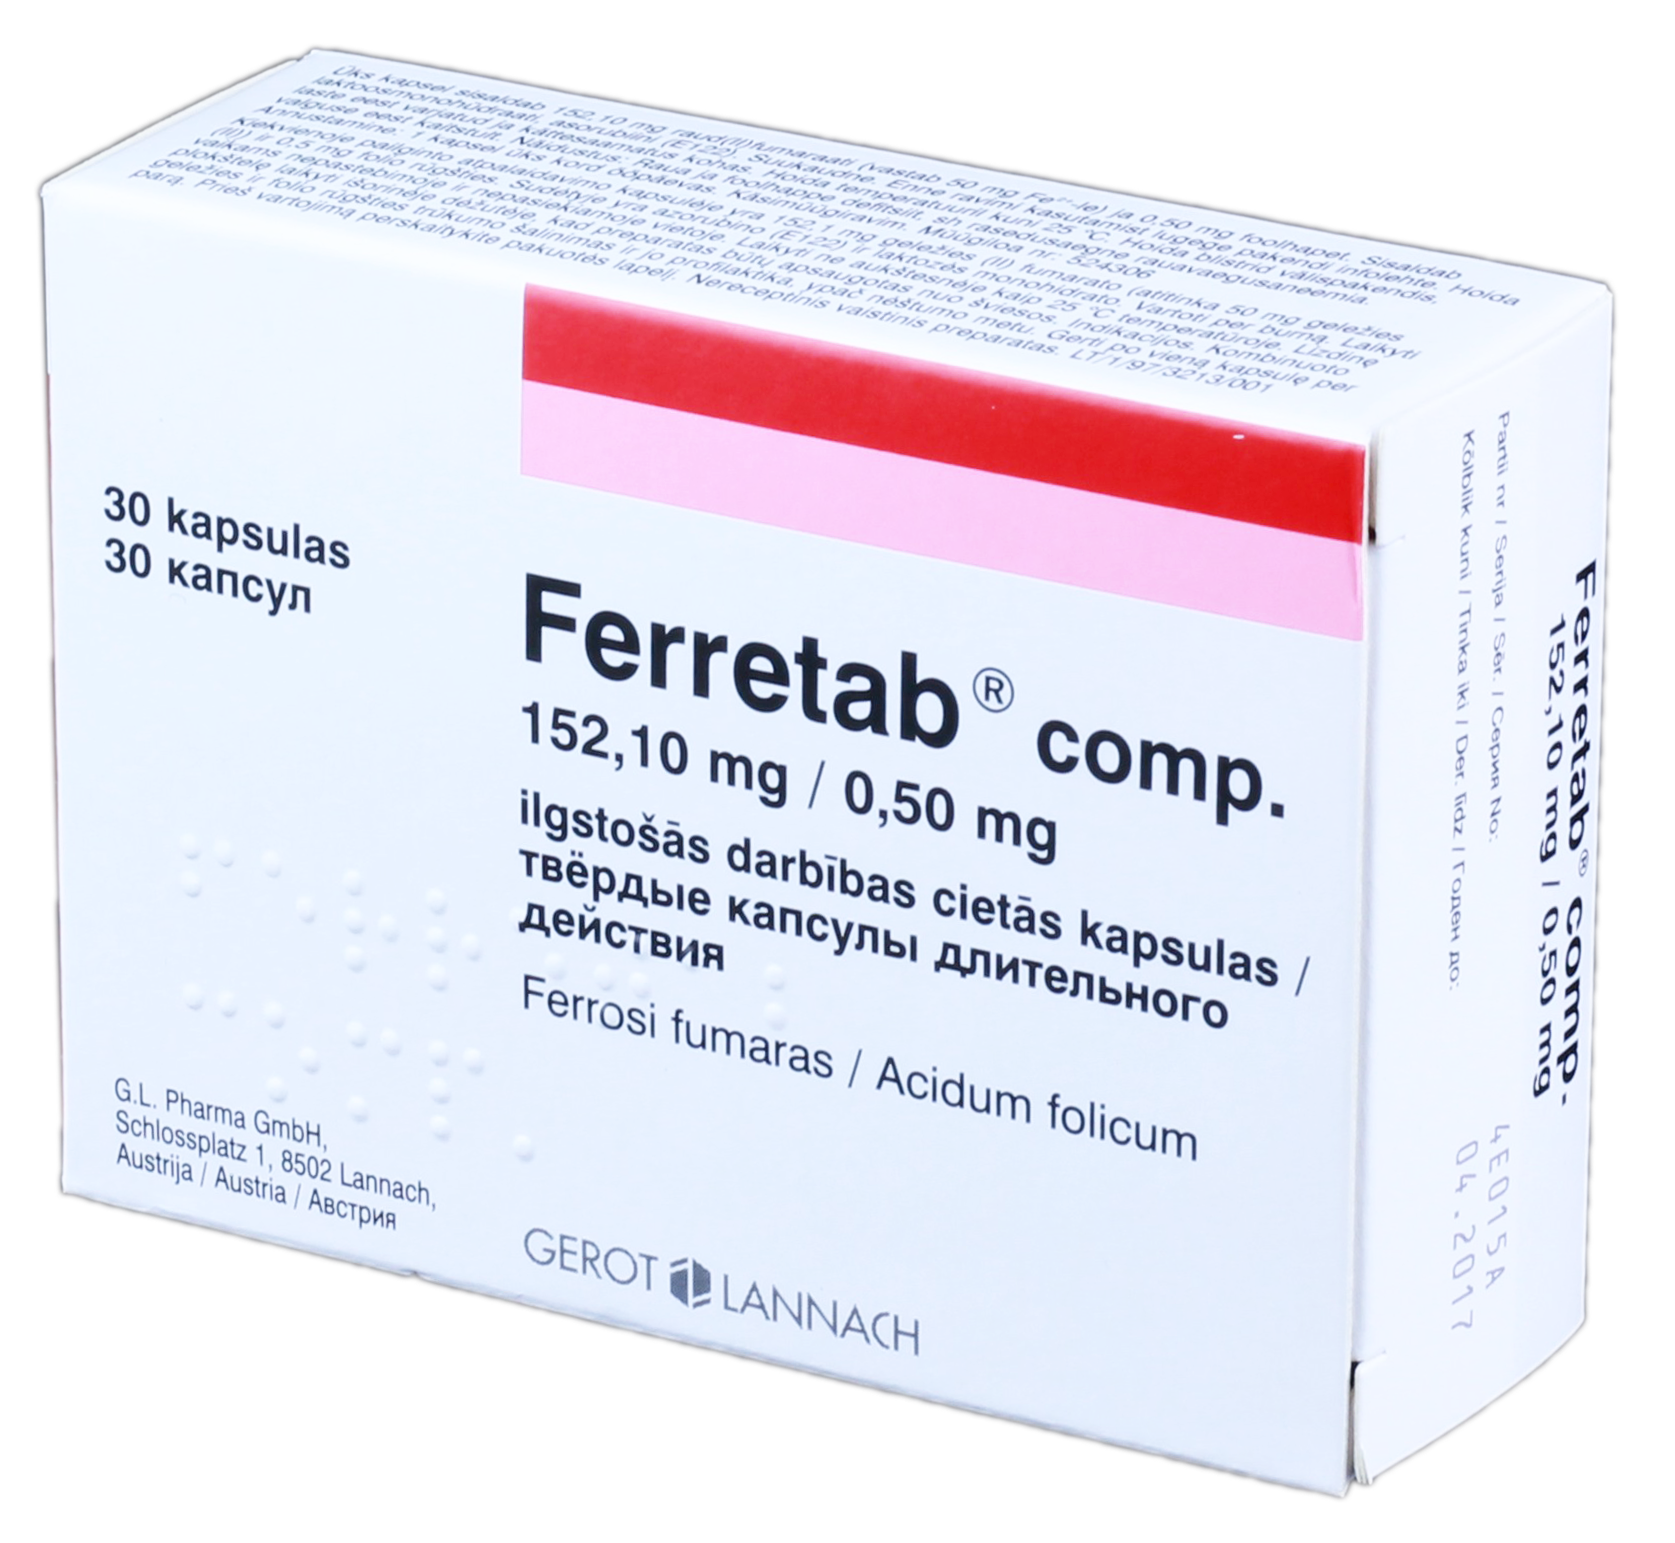 FERRETAB Comp. 152,10 mg/0,50 mg cietās kapsulas, 30 gab.